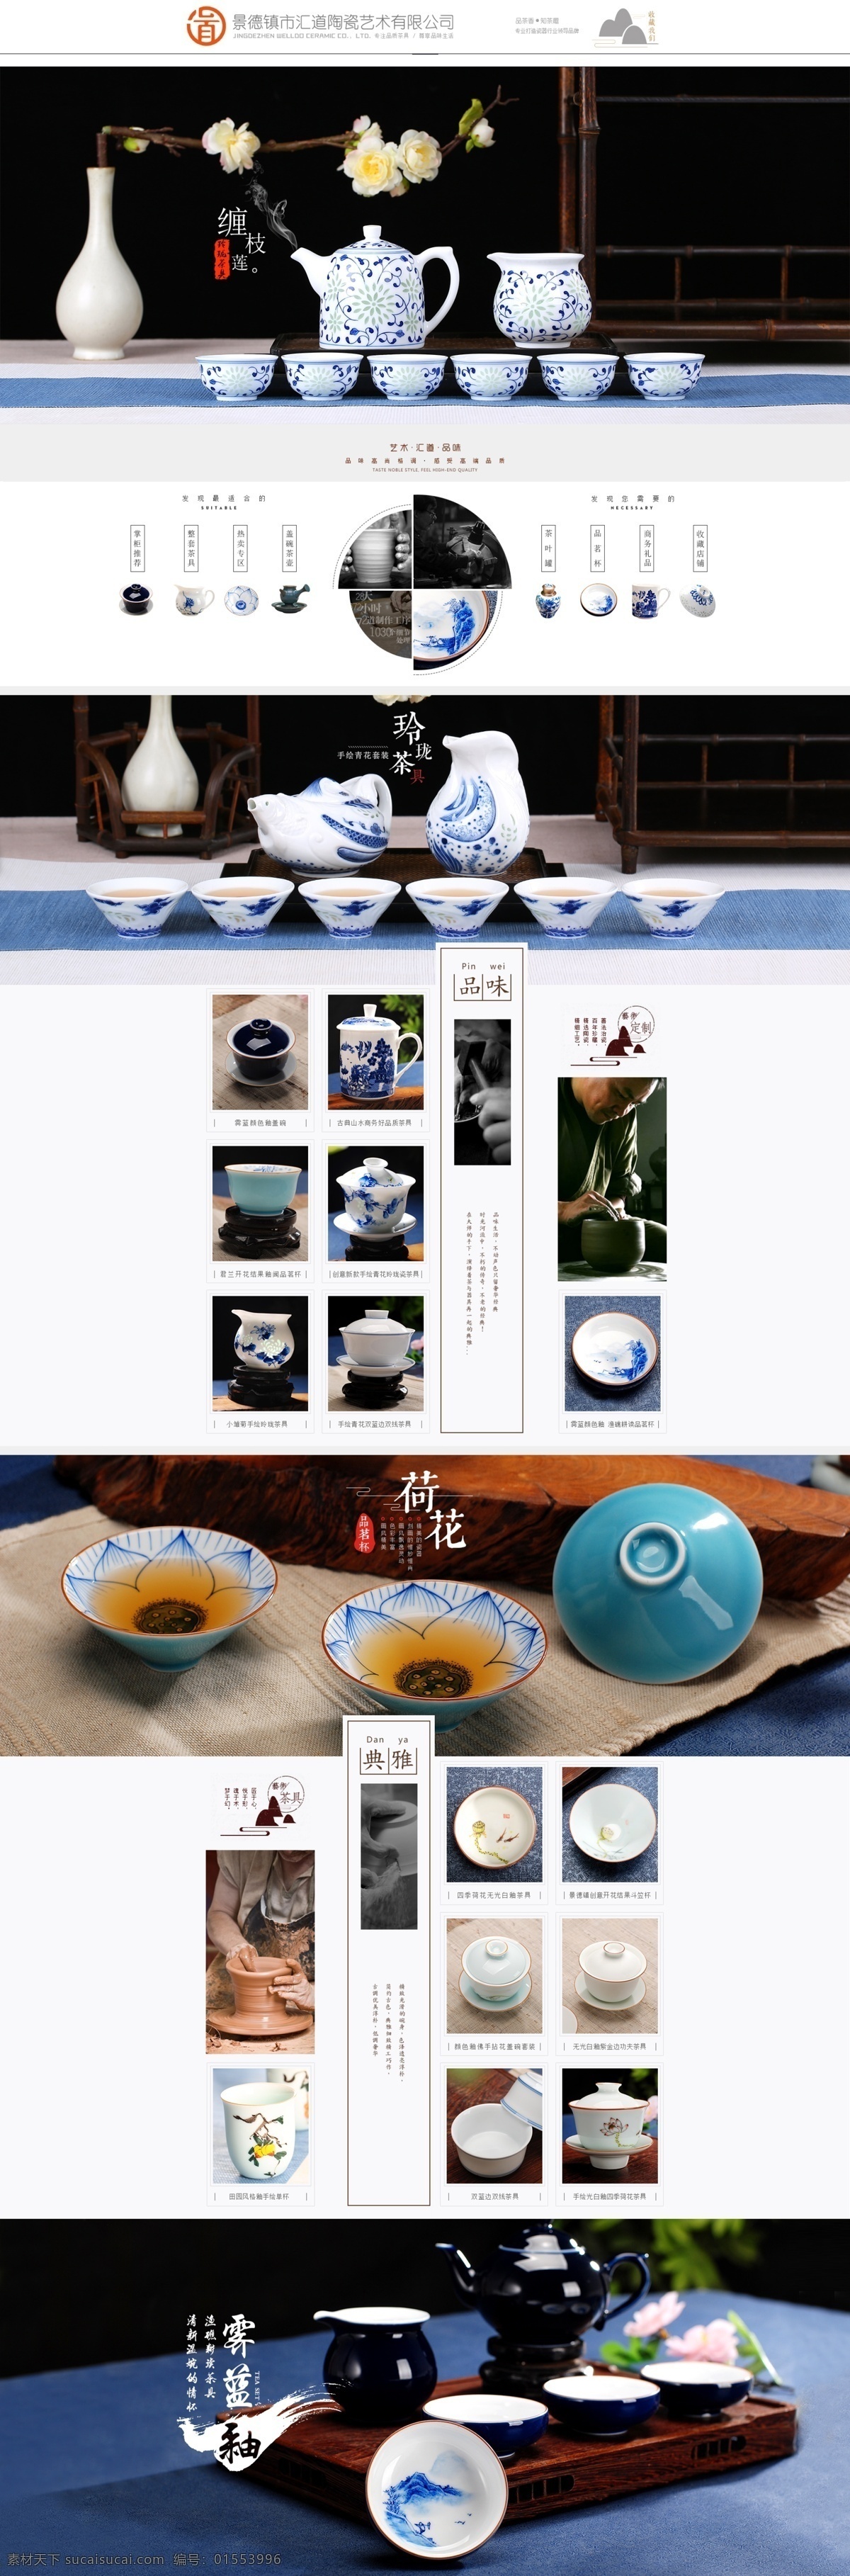 青花 陶瓷 艺术 详情 页 碗 家具 中国风 简约 中式 茶具 茶杯 茶壶 白釉